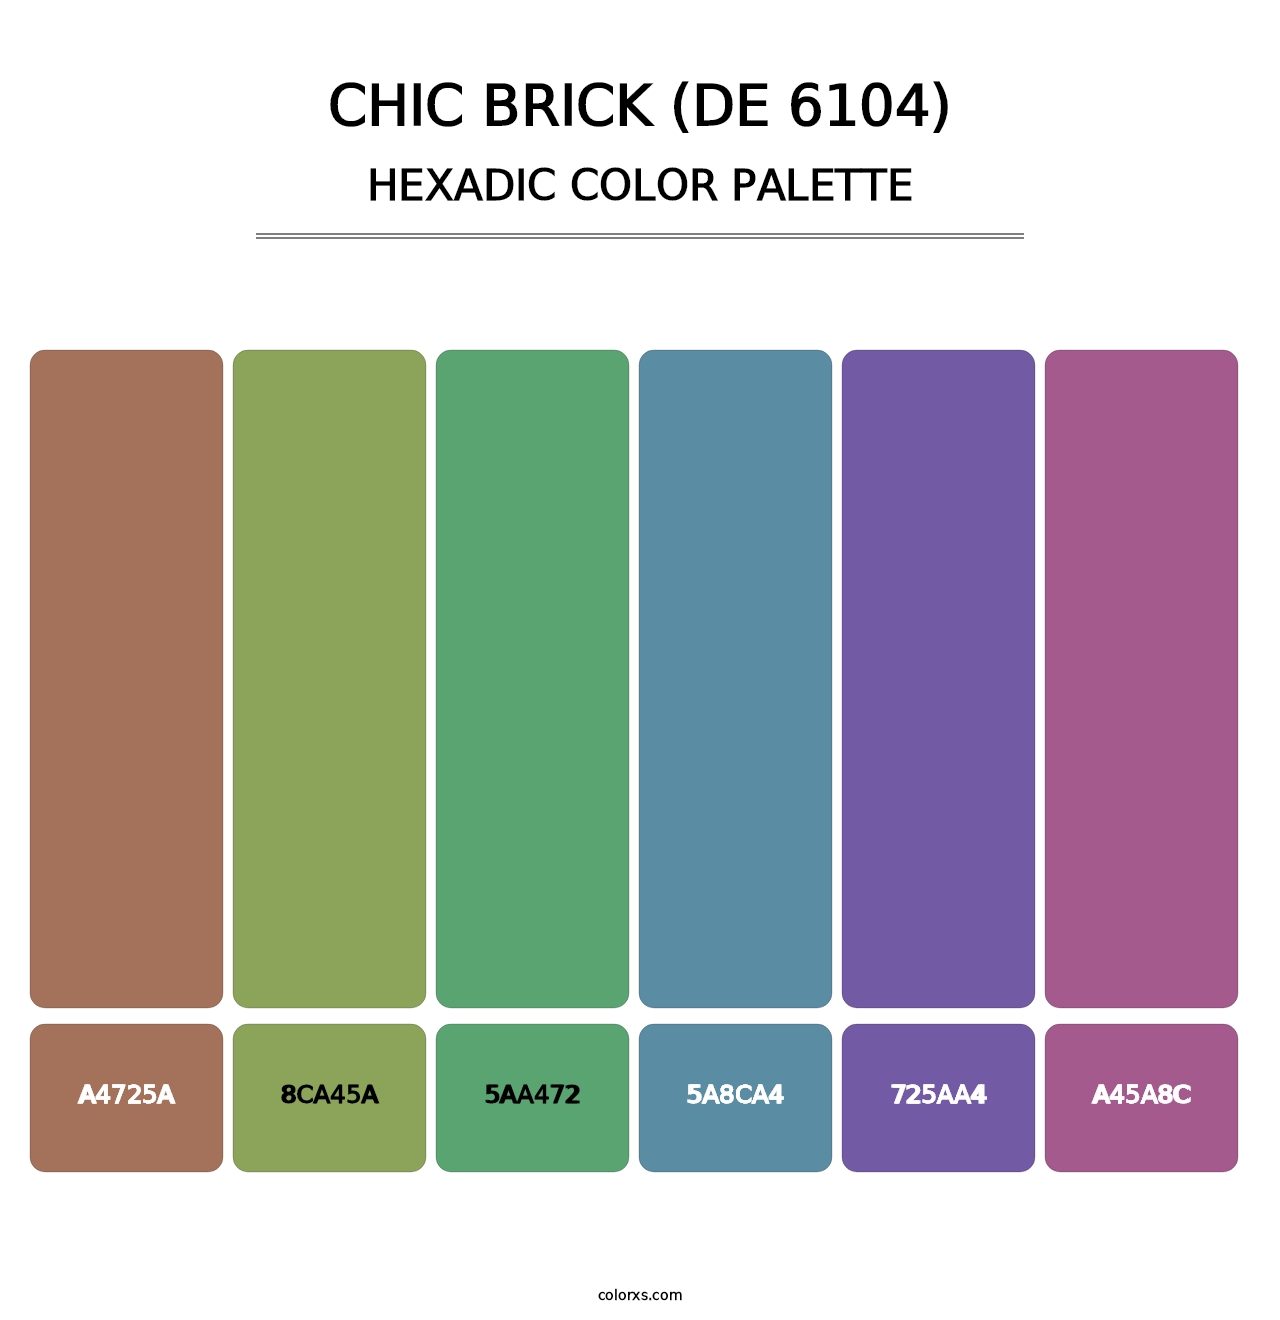 Chic Brick (DE 6104) - Hexadic Color Palette